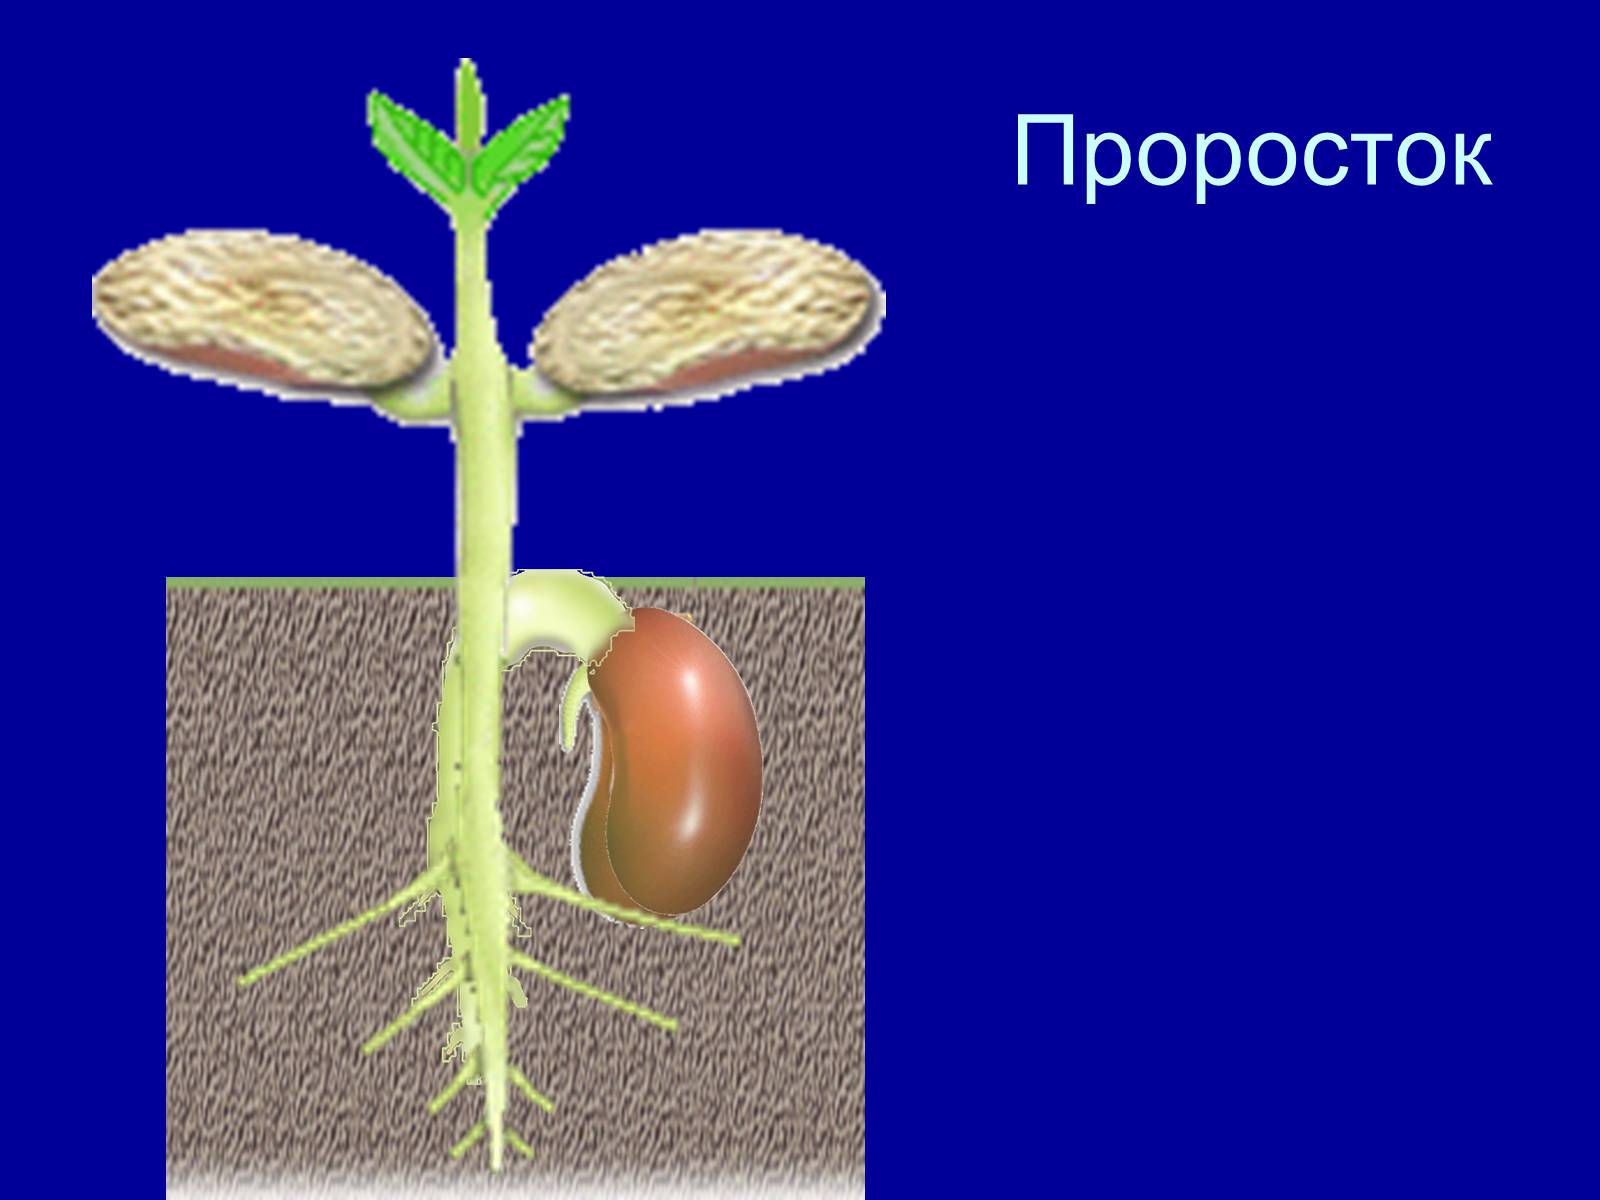 На каком фото изображен надземный способ прорастания семян